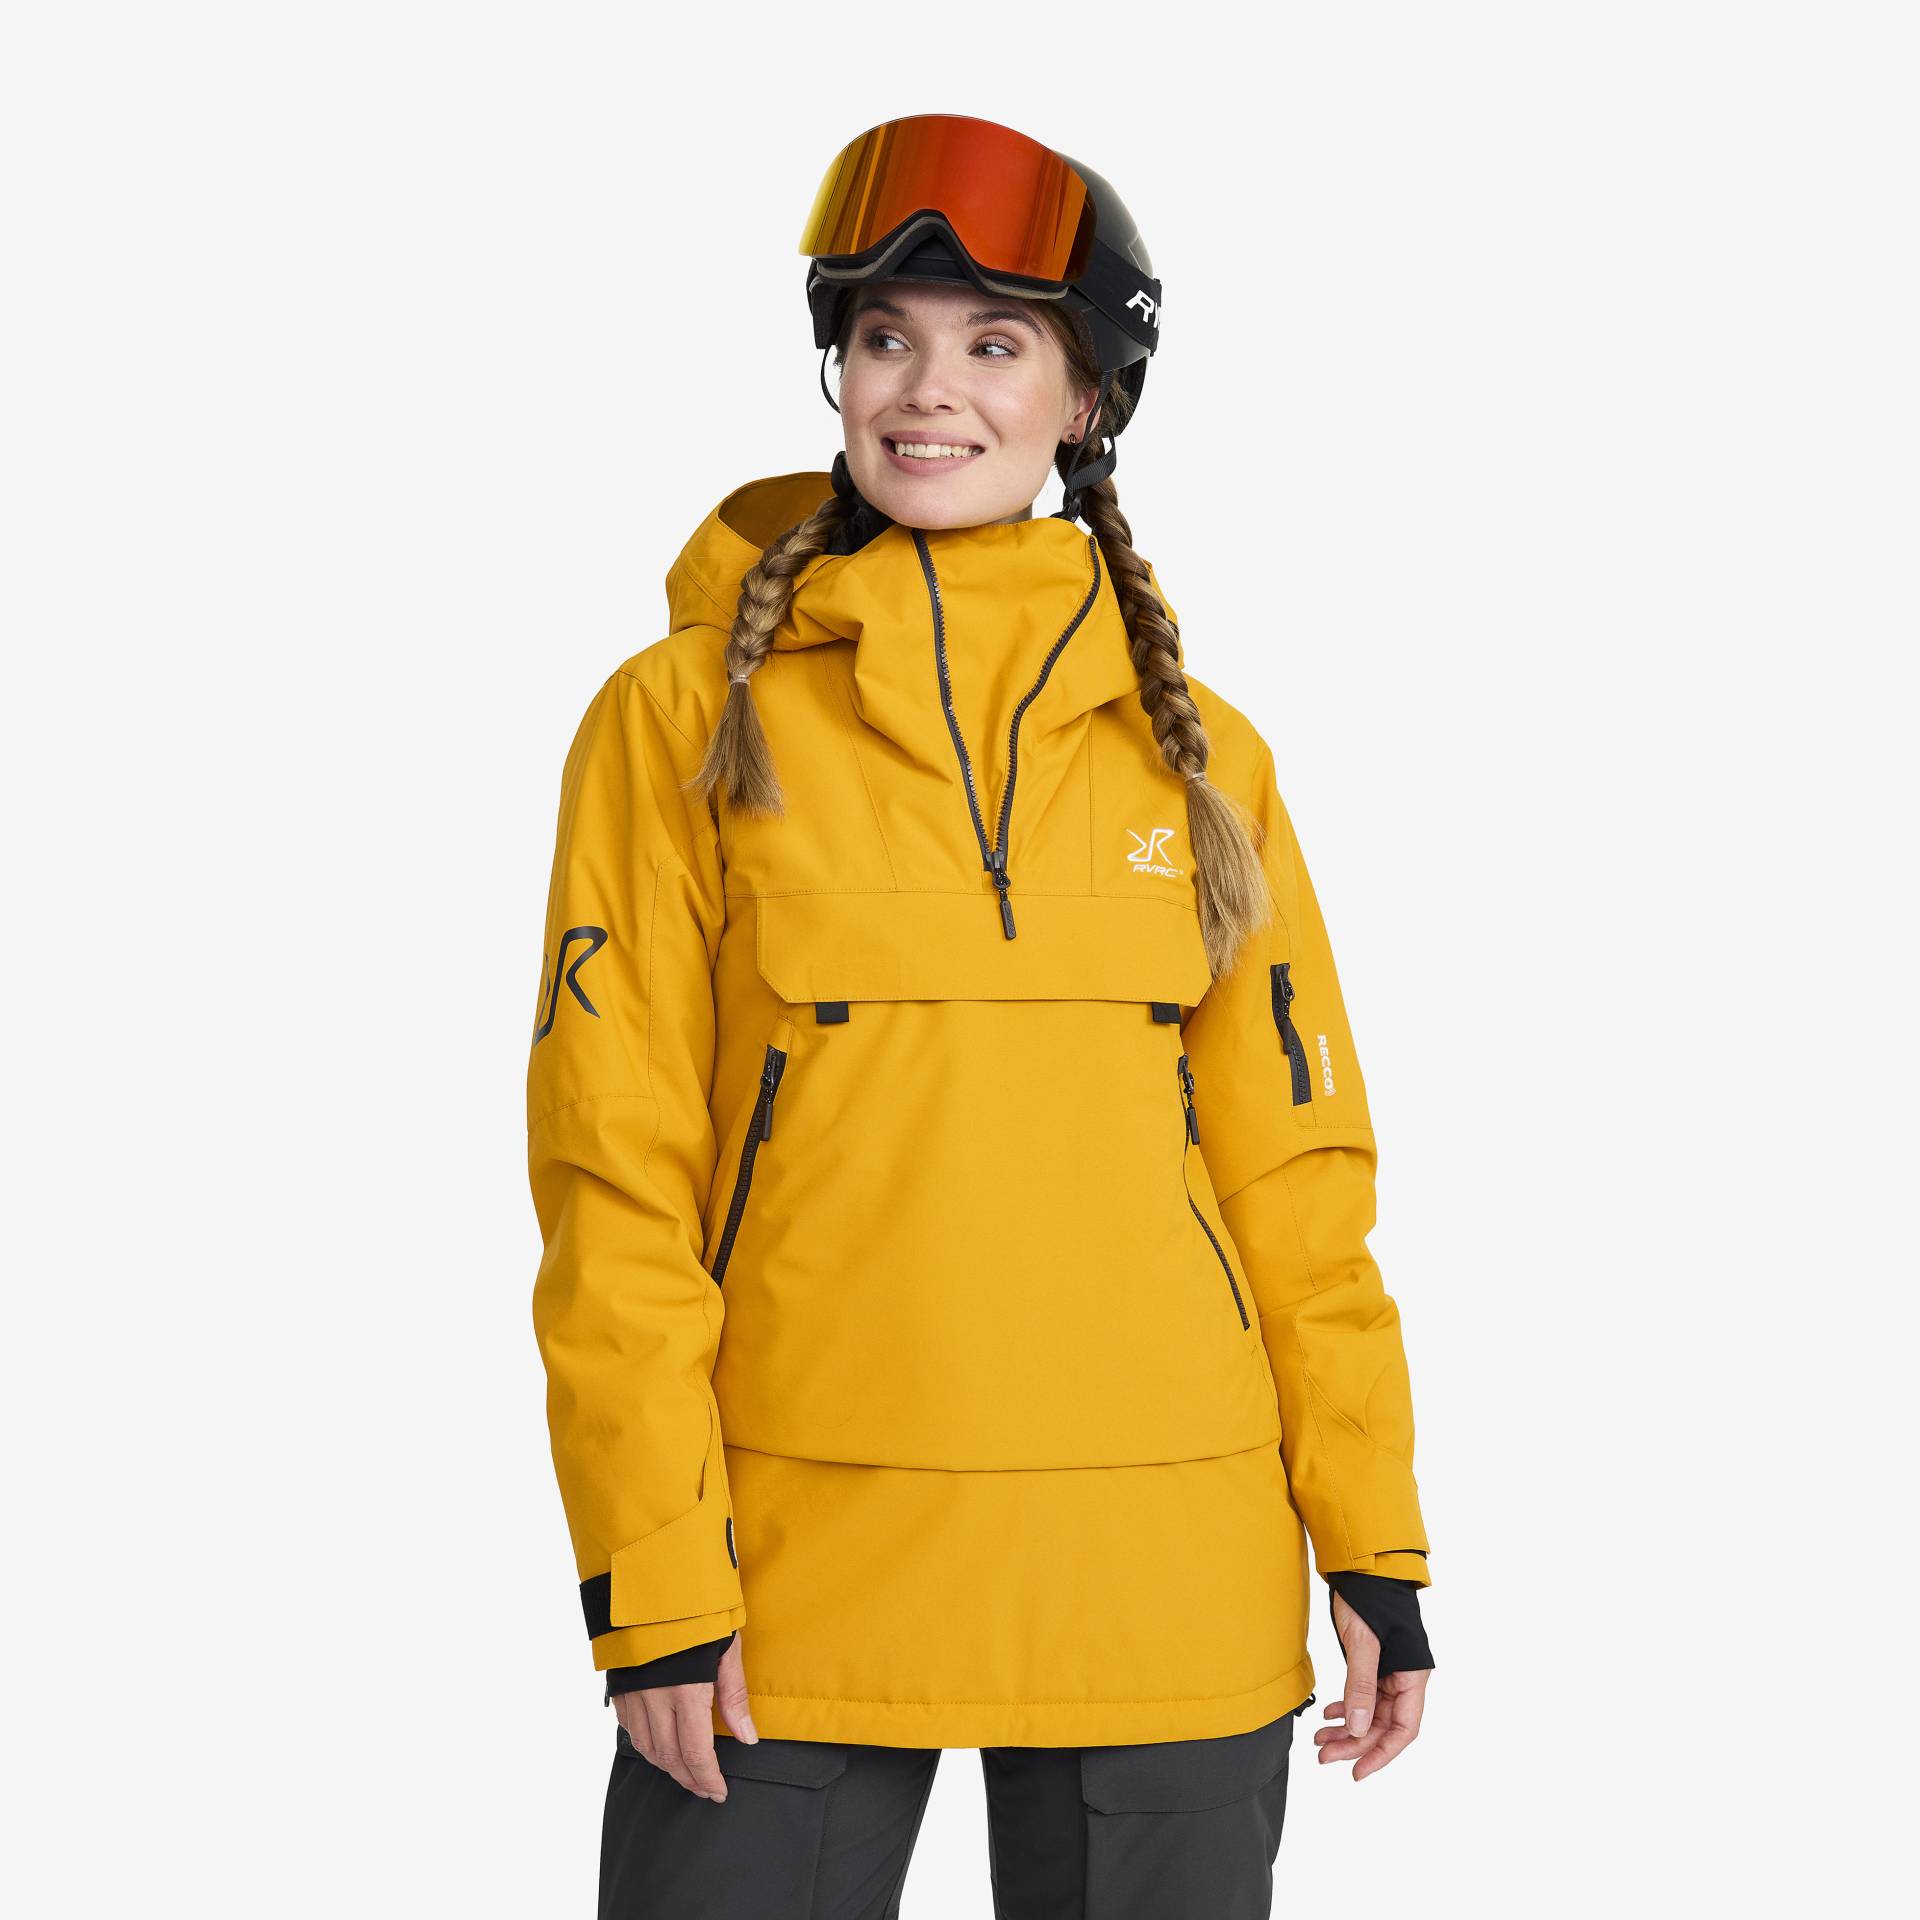 Halo 2L Insulated Ski Anorak Damen Golden Yellow, Größe:XS - Skijacken von RevolutionRace